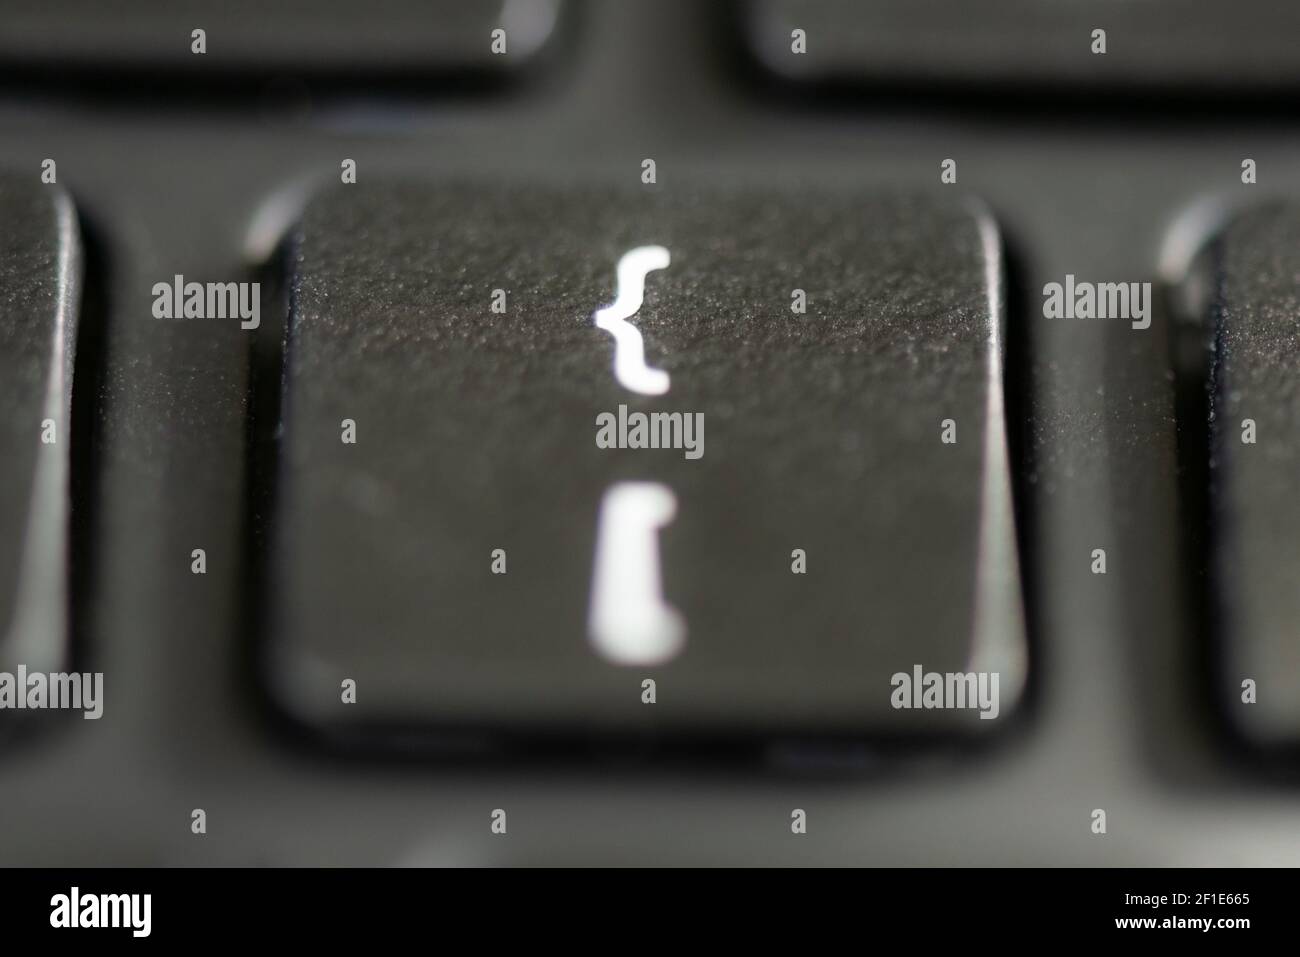 Corchete cuadrado y llave de corchete en el teclado de un portátil Foto de stock